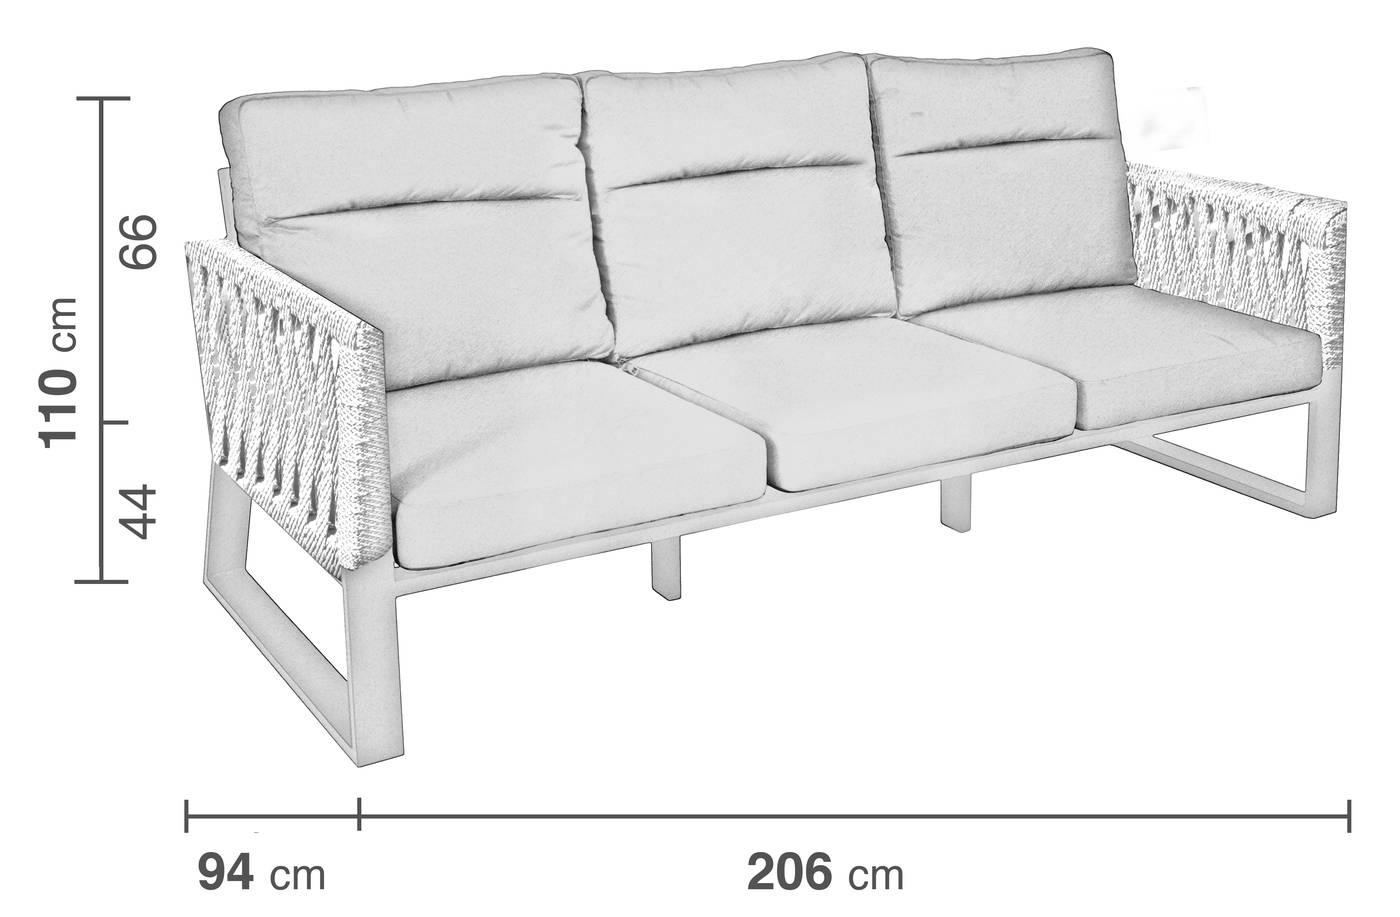 Set Aluminio Bolonia-980 - Conjunto aluminio y cuerda: 1 sofá de 3 plazas + 2 sillones + 1 mesa de centro + 2 taburetes + cojines. Respaldos reclinables. Colores: blanco, gris, marrón o champagne.